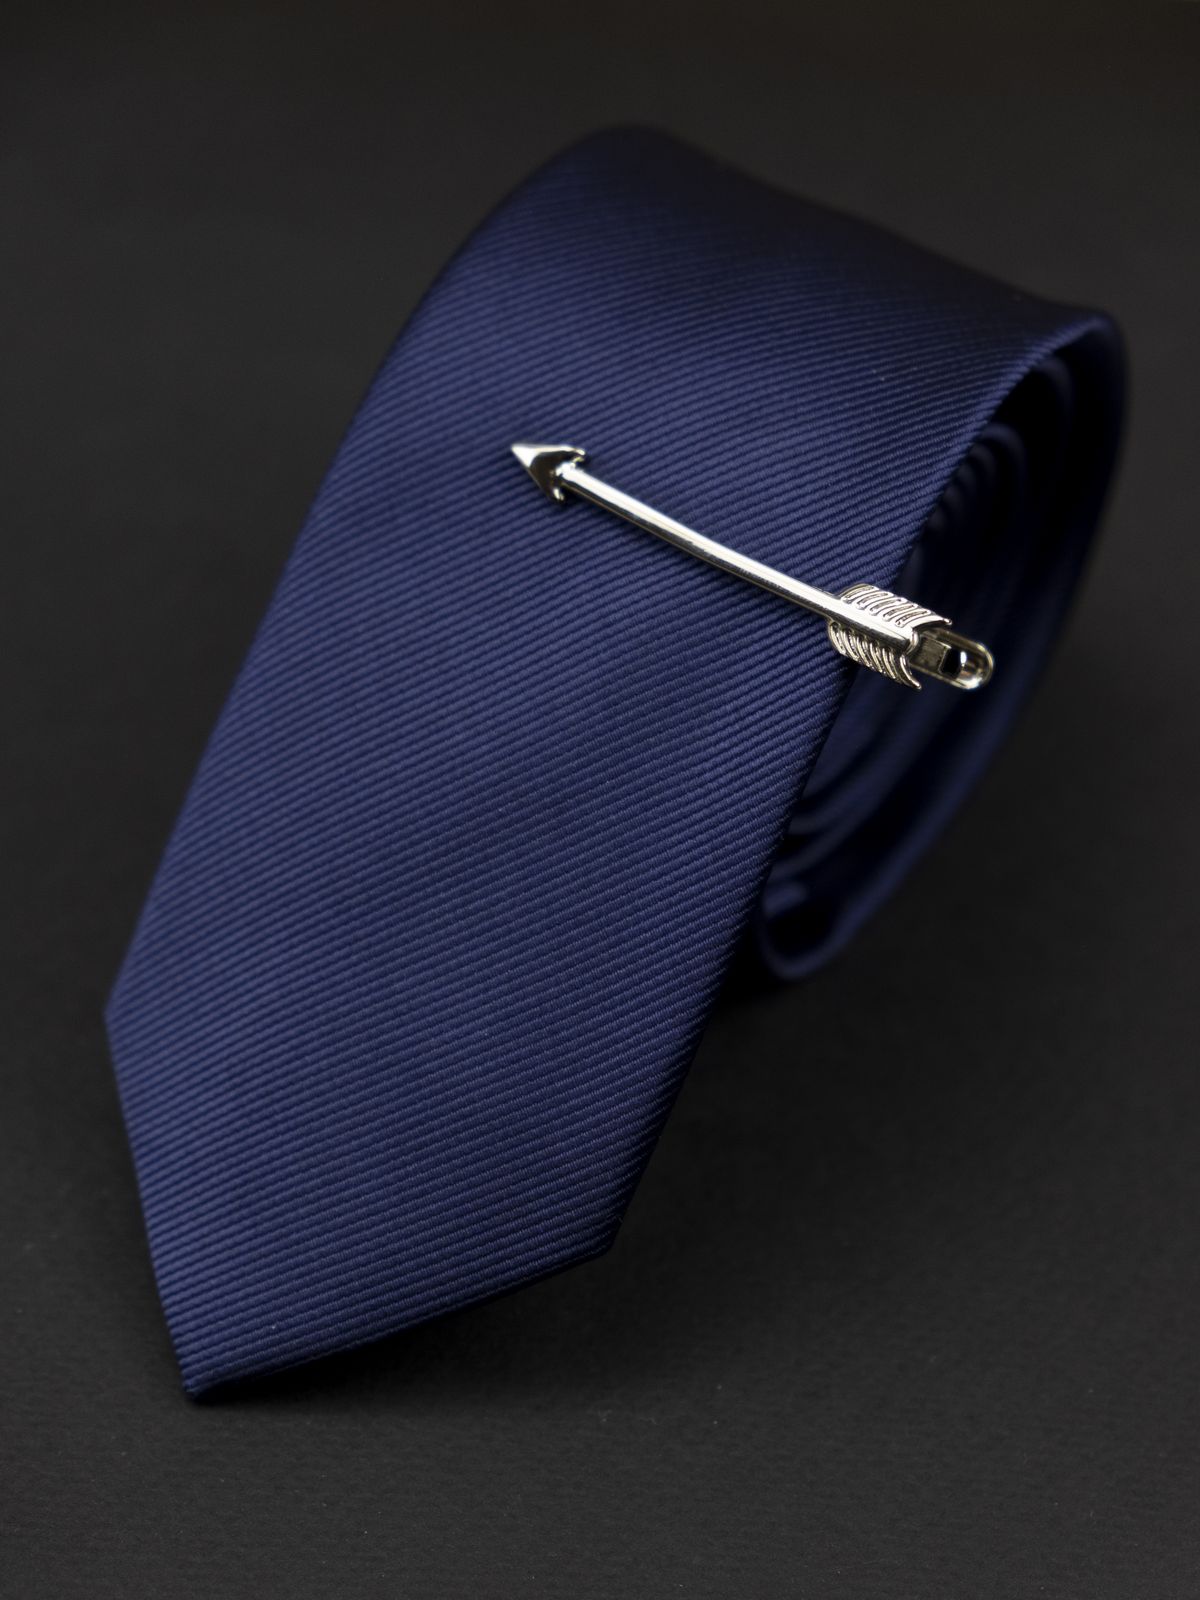 Зажим для галстука серебряная стрела купить. Состав: Акрил Медь, Цвет: Серебристый, Габариты: 0,7 см x 4,5 см, Вес: 6; 